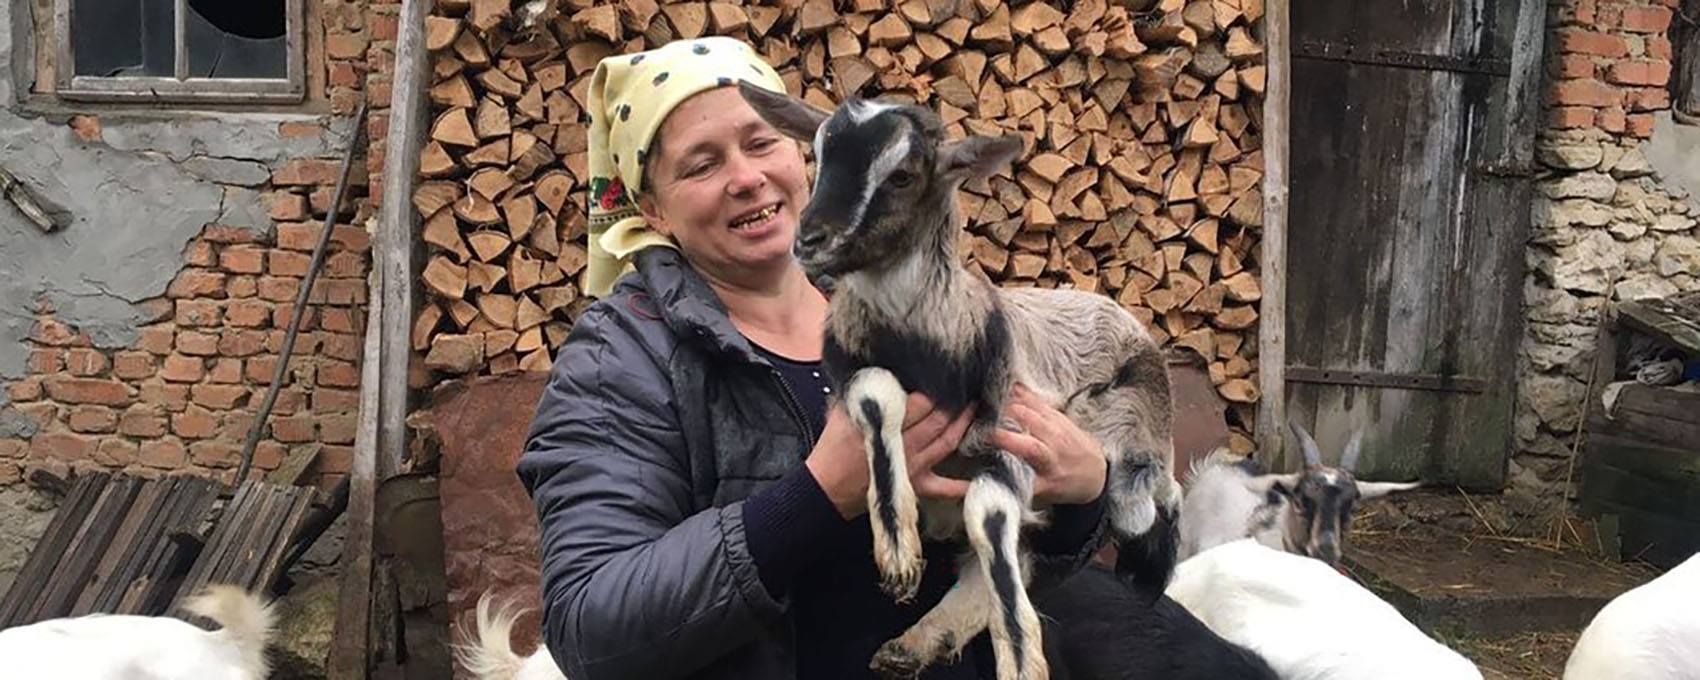 На Тернопольщине женщина снимает влоги о сельской жизни